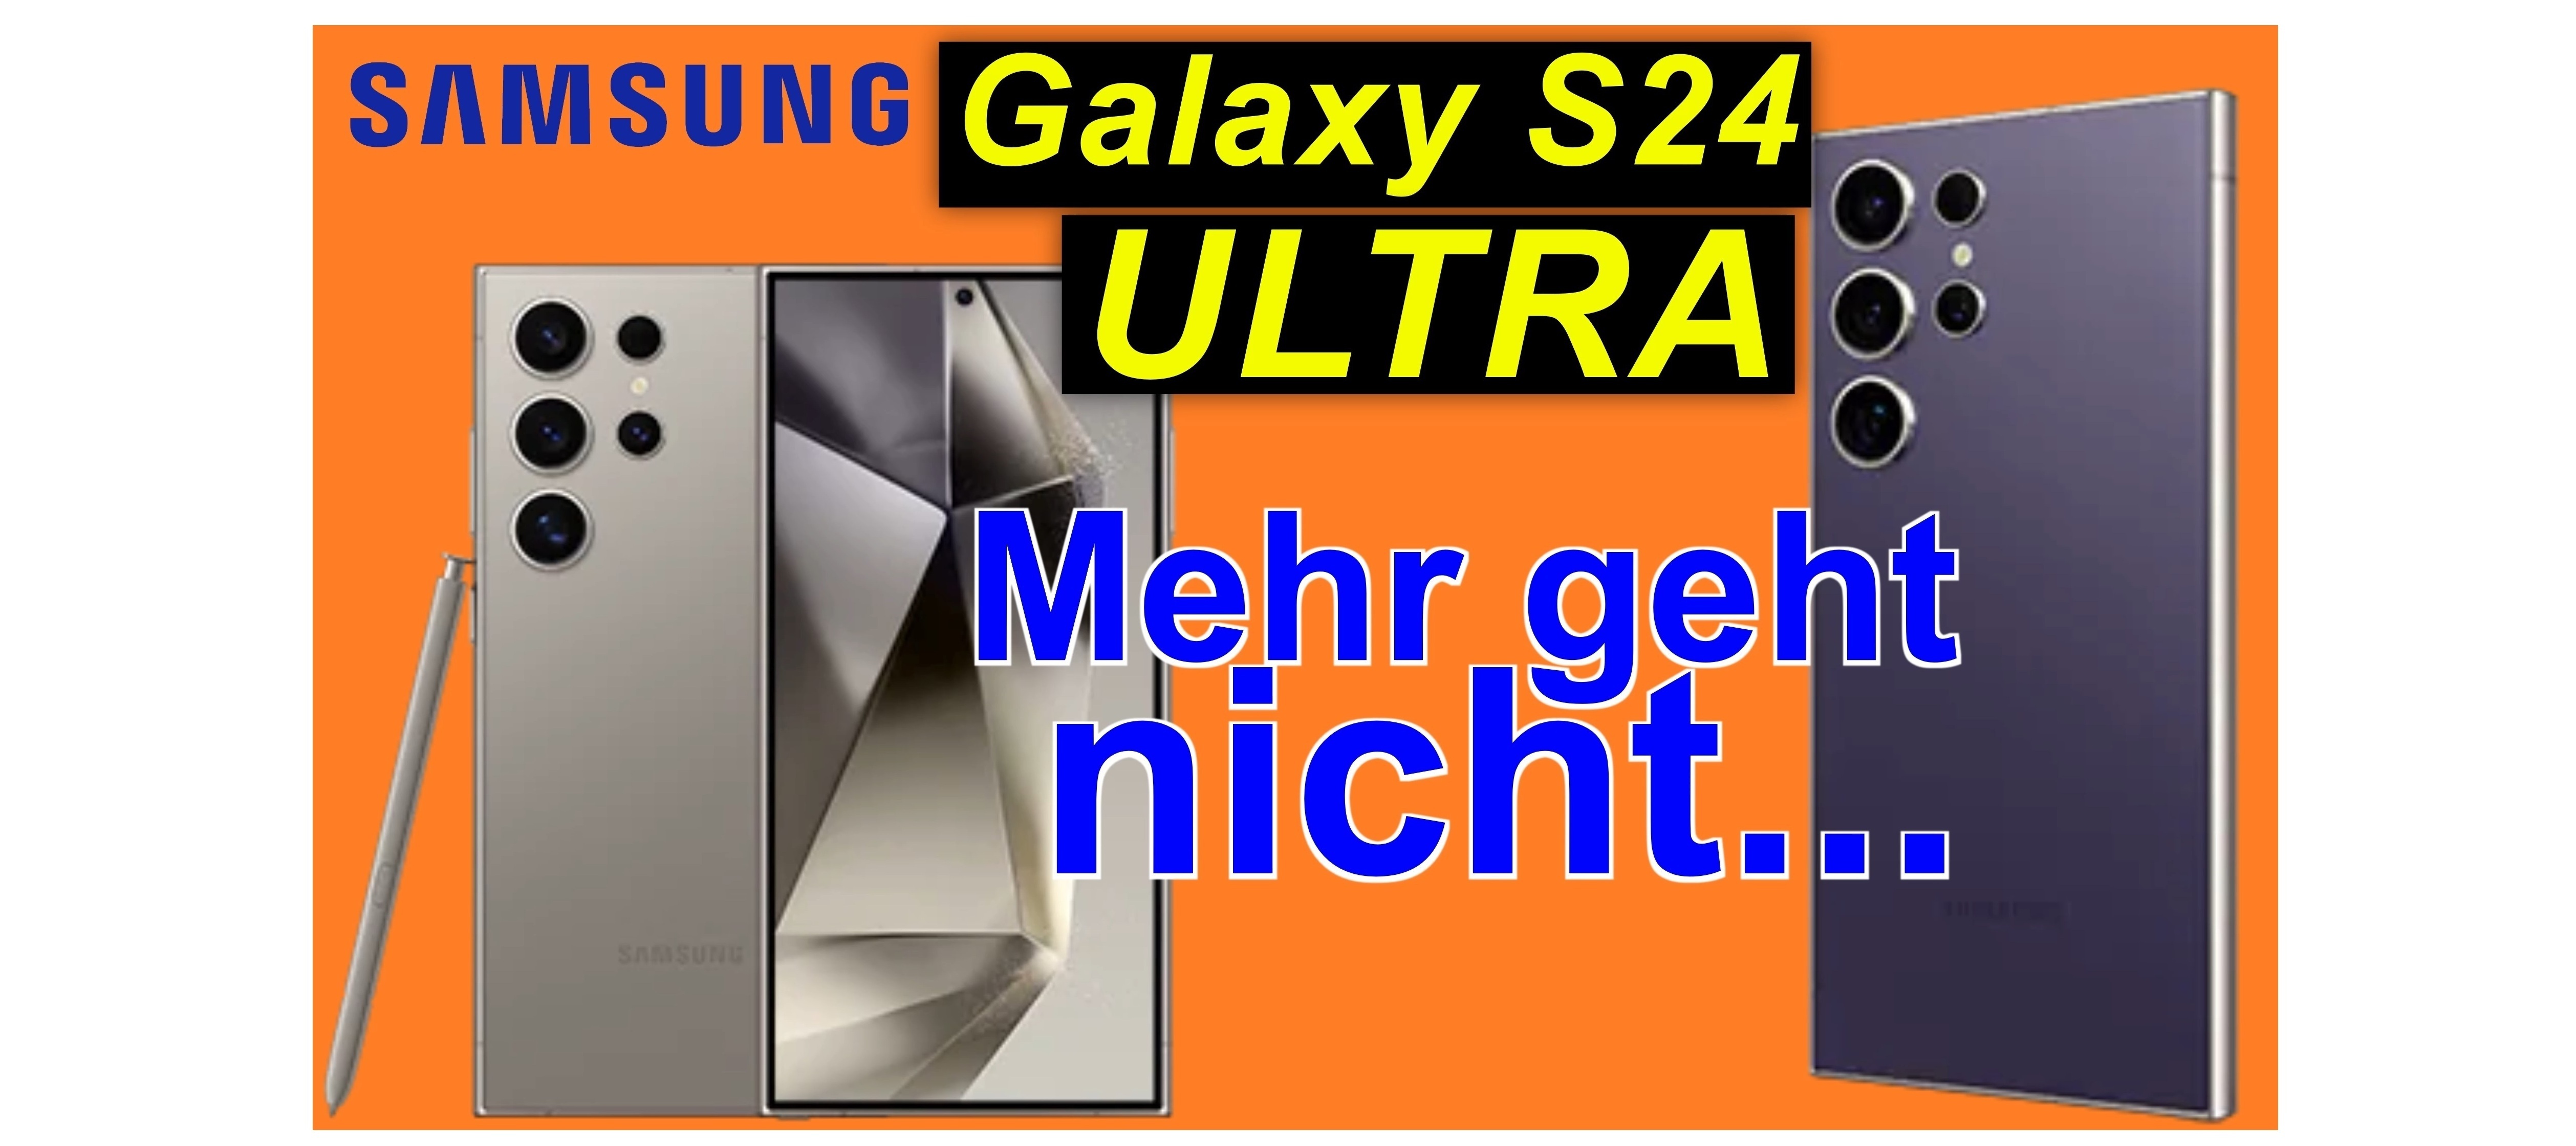 Samsung Galaxy S24 Ultra - auspacken und Ersteindruck | SeppelPower